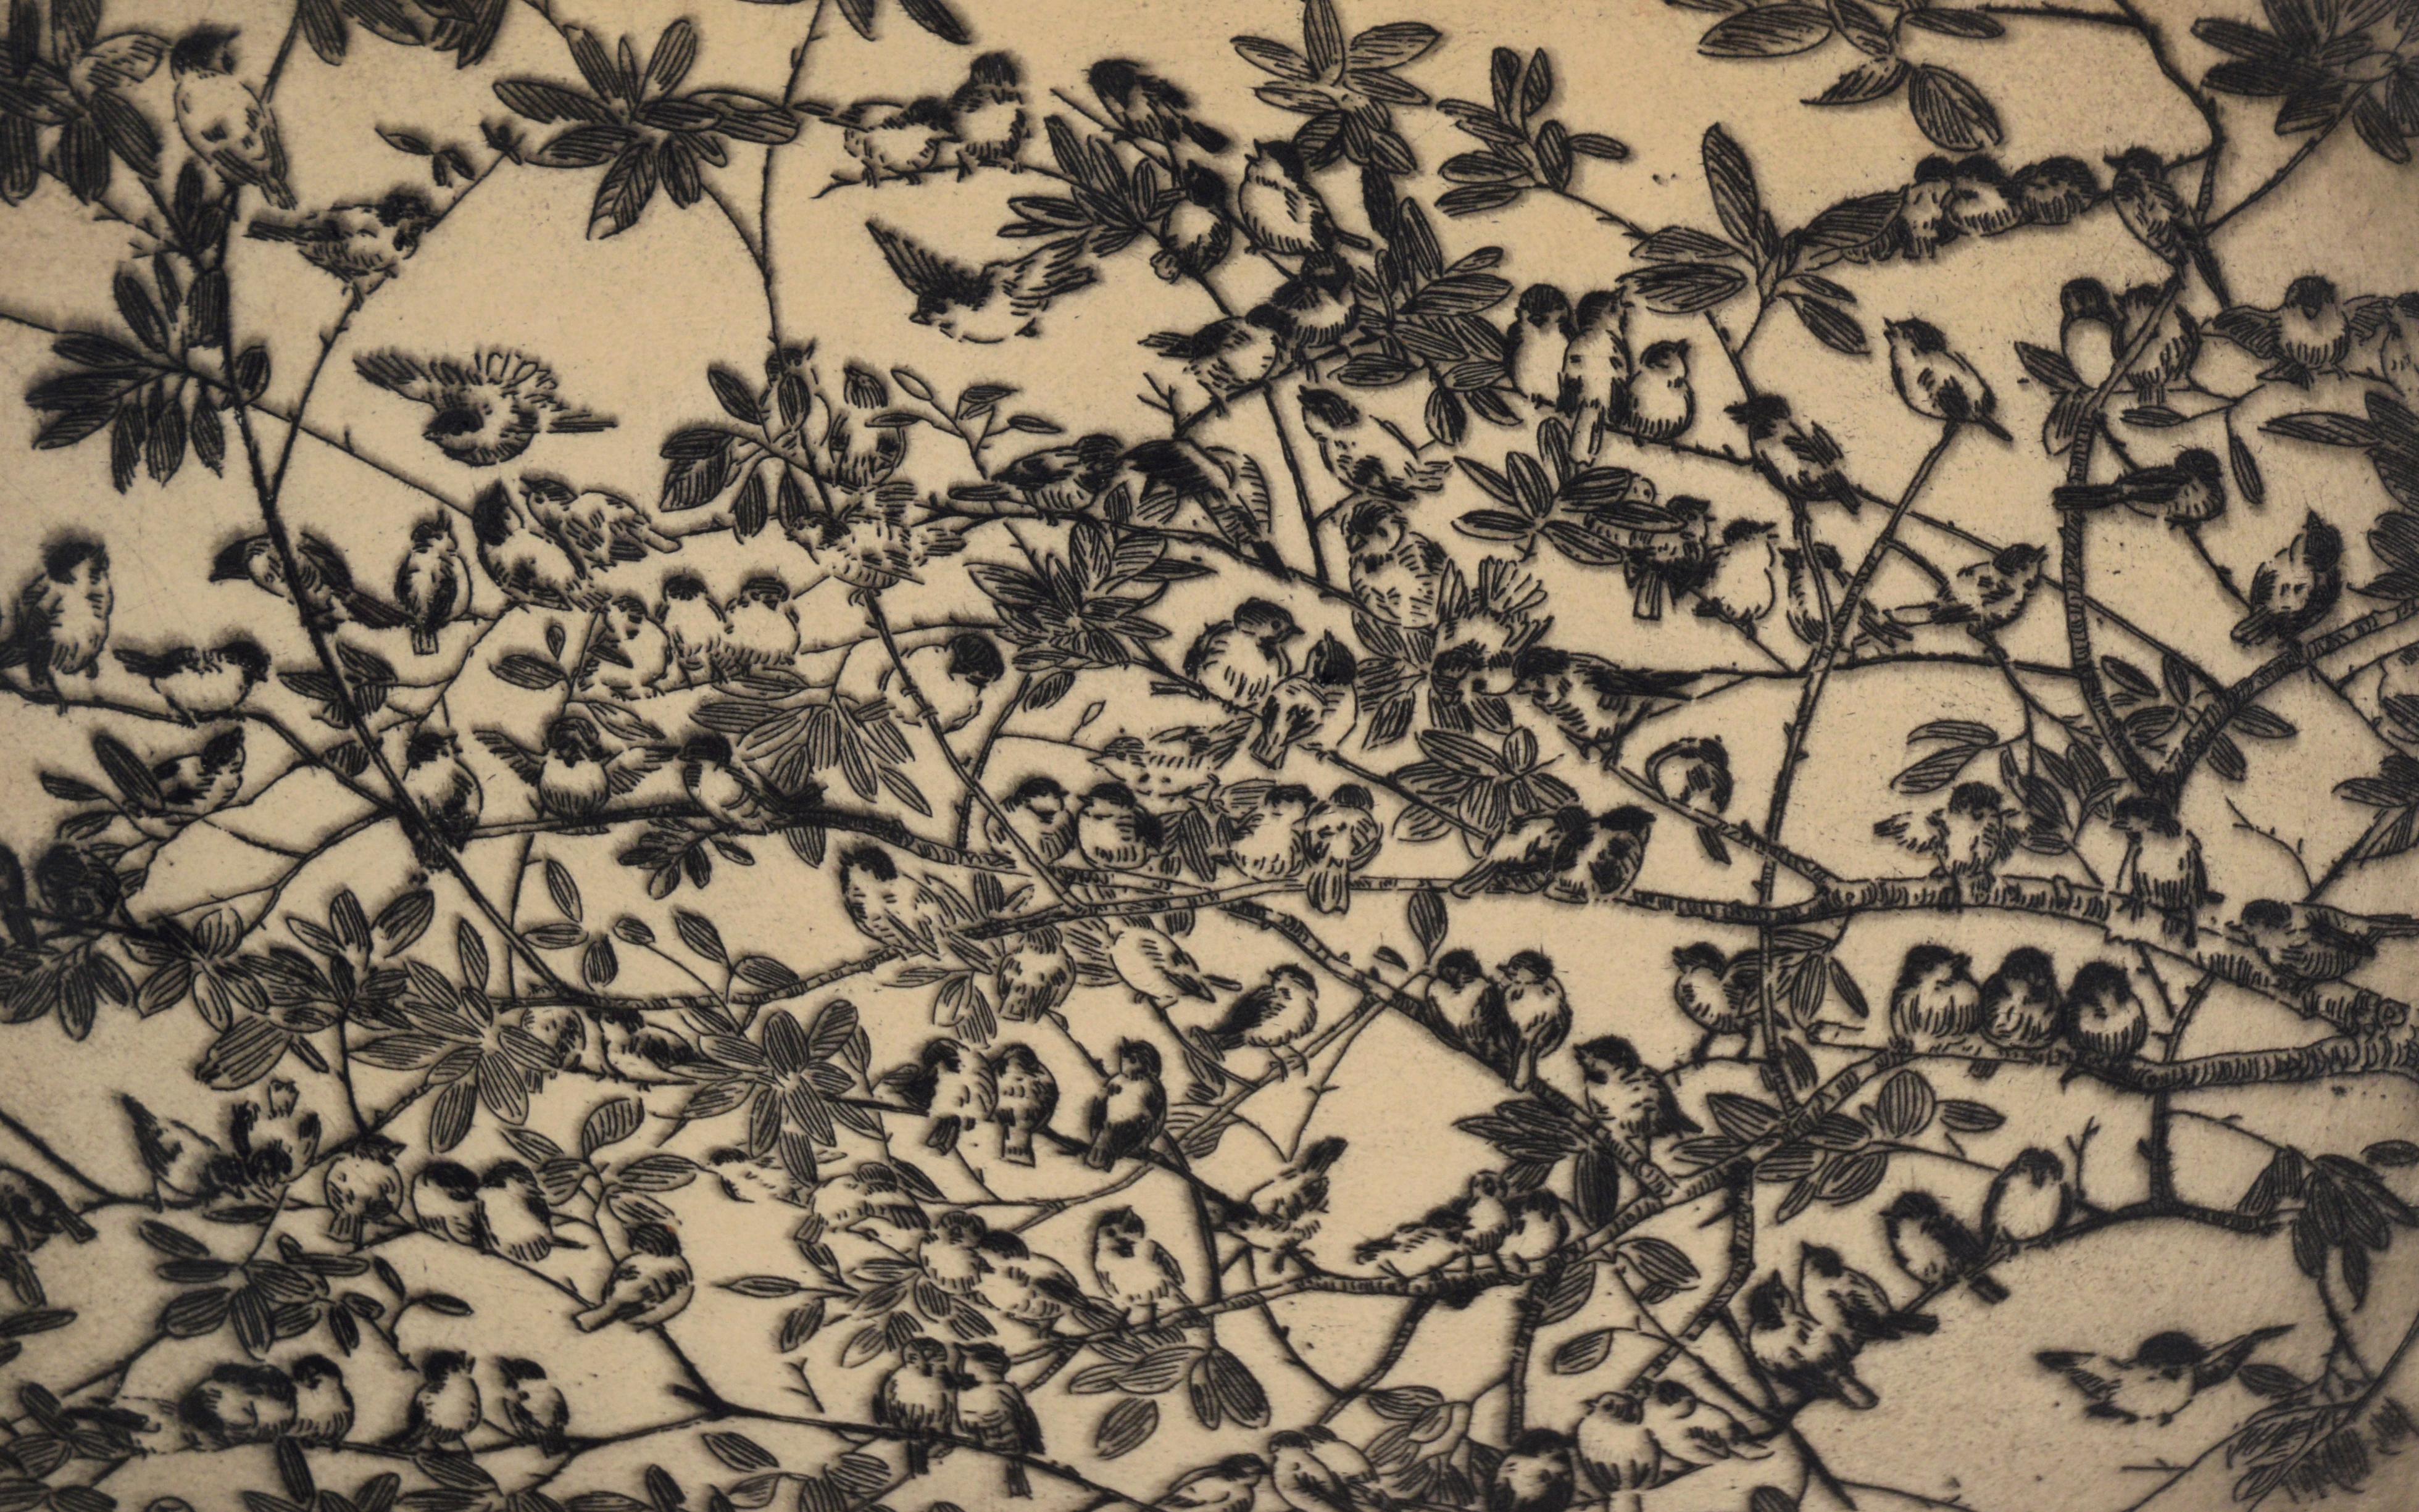 Lithographie à l'encre sur papier - Édition de 75 exemplaires

Lithographie délicate et détaillée d'oiseaux par Fugi Nakamizo (japonais/américain, 1889-1950). De petits oiseaux sont assis sur des branches, avec des feuilles tout autour d'eux. Les